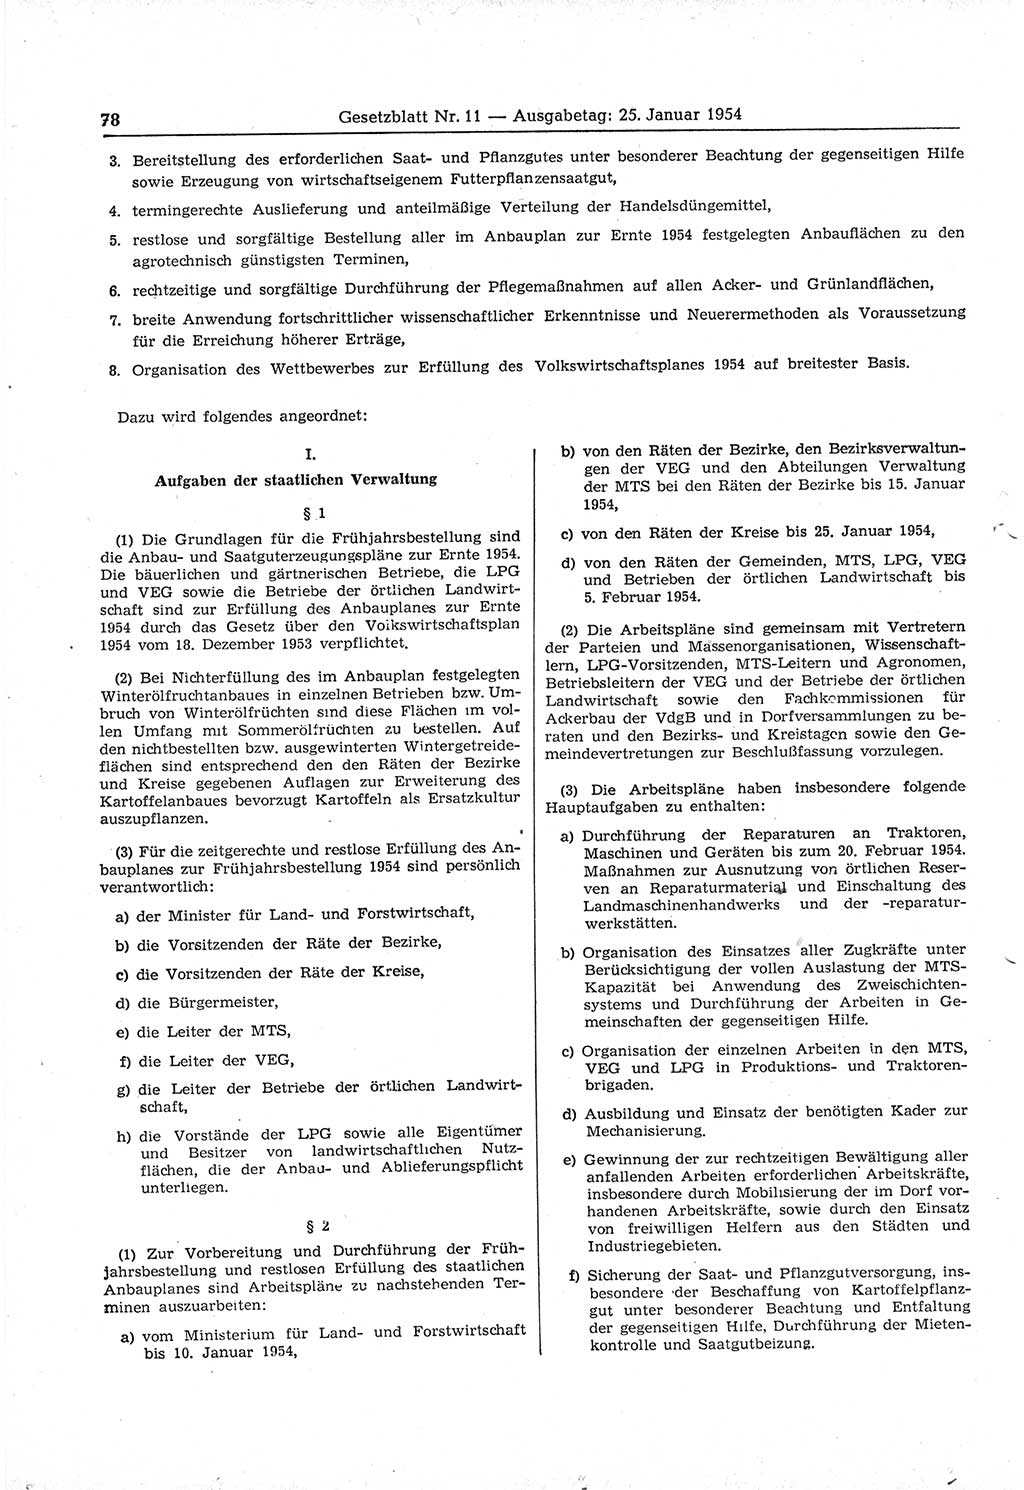 Gesetzblatt (GBl.) der Deutschen Demokratischen Republik (DDR) 1954, Seite 78 (GBl. DDR 1954, S. 78)